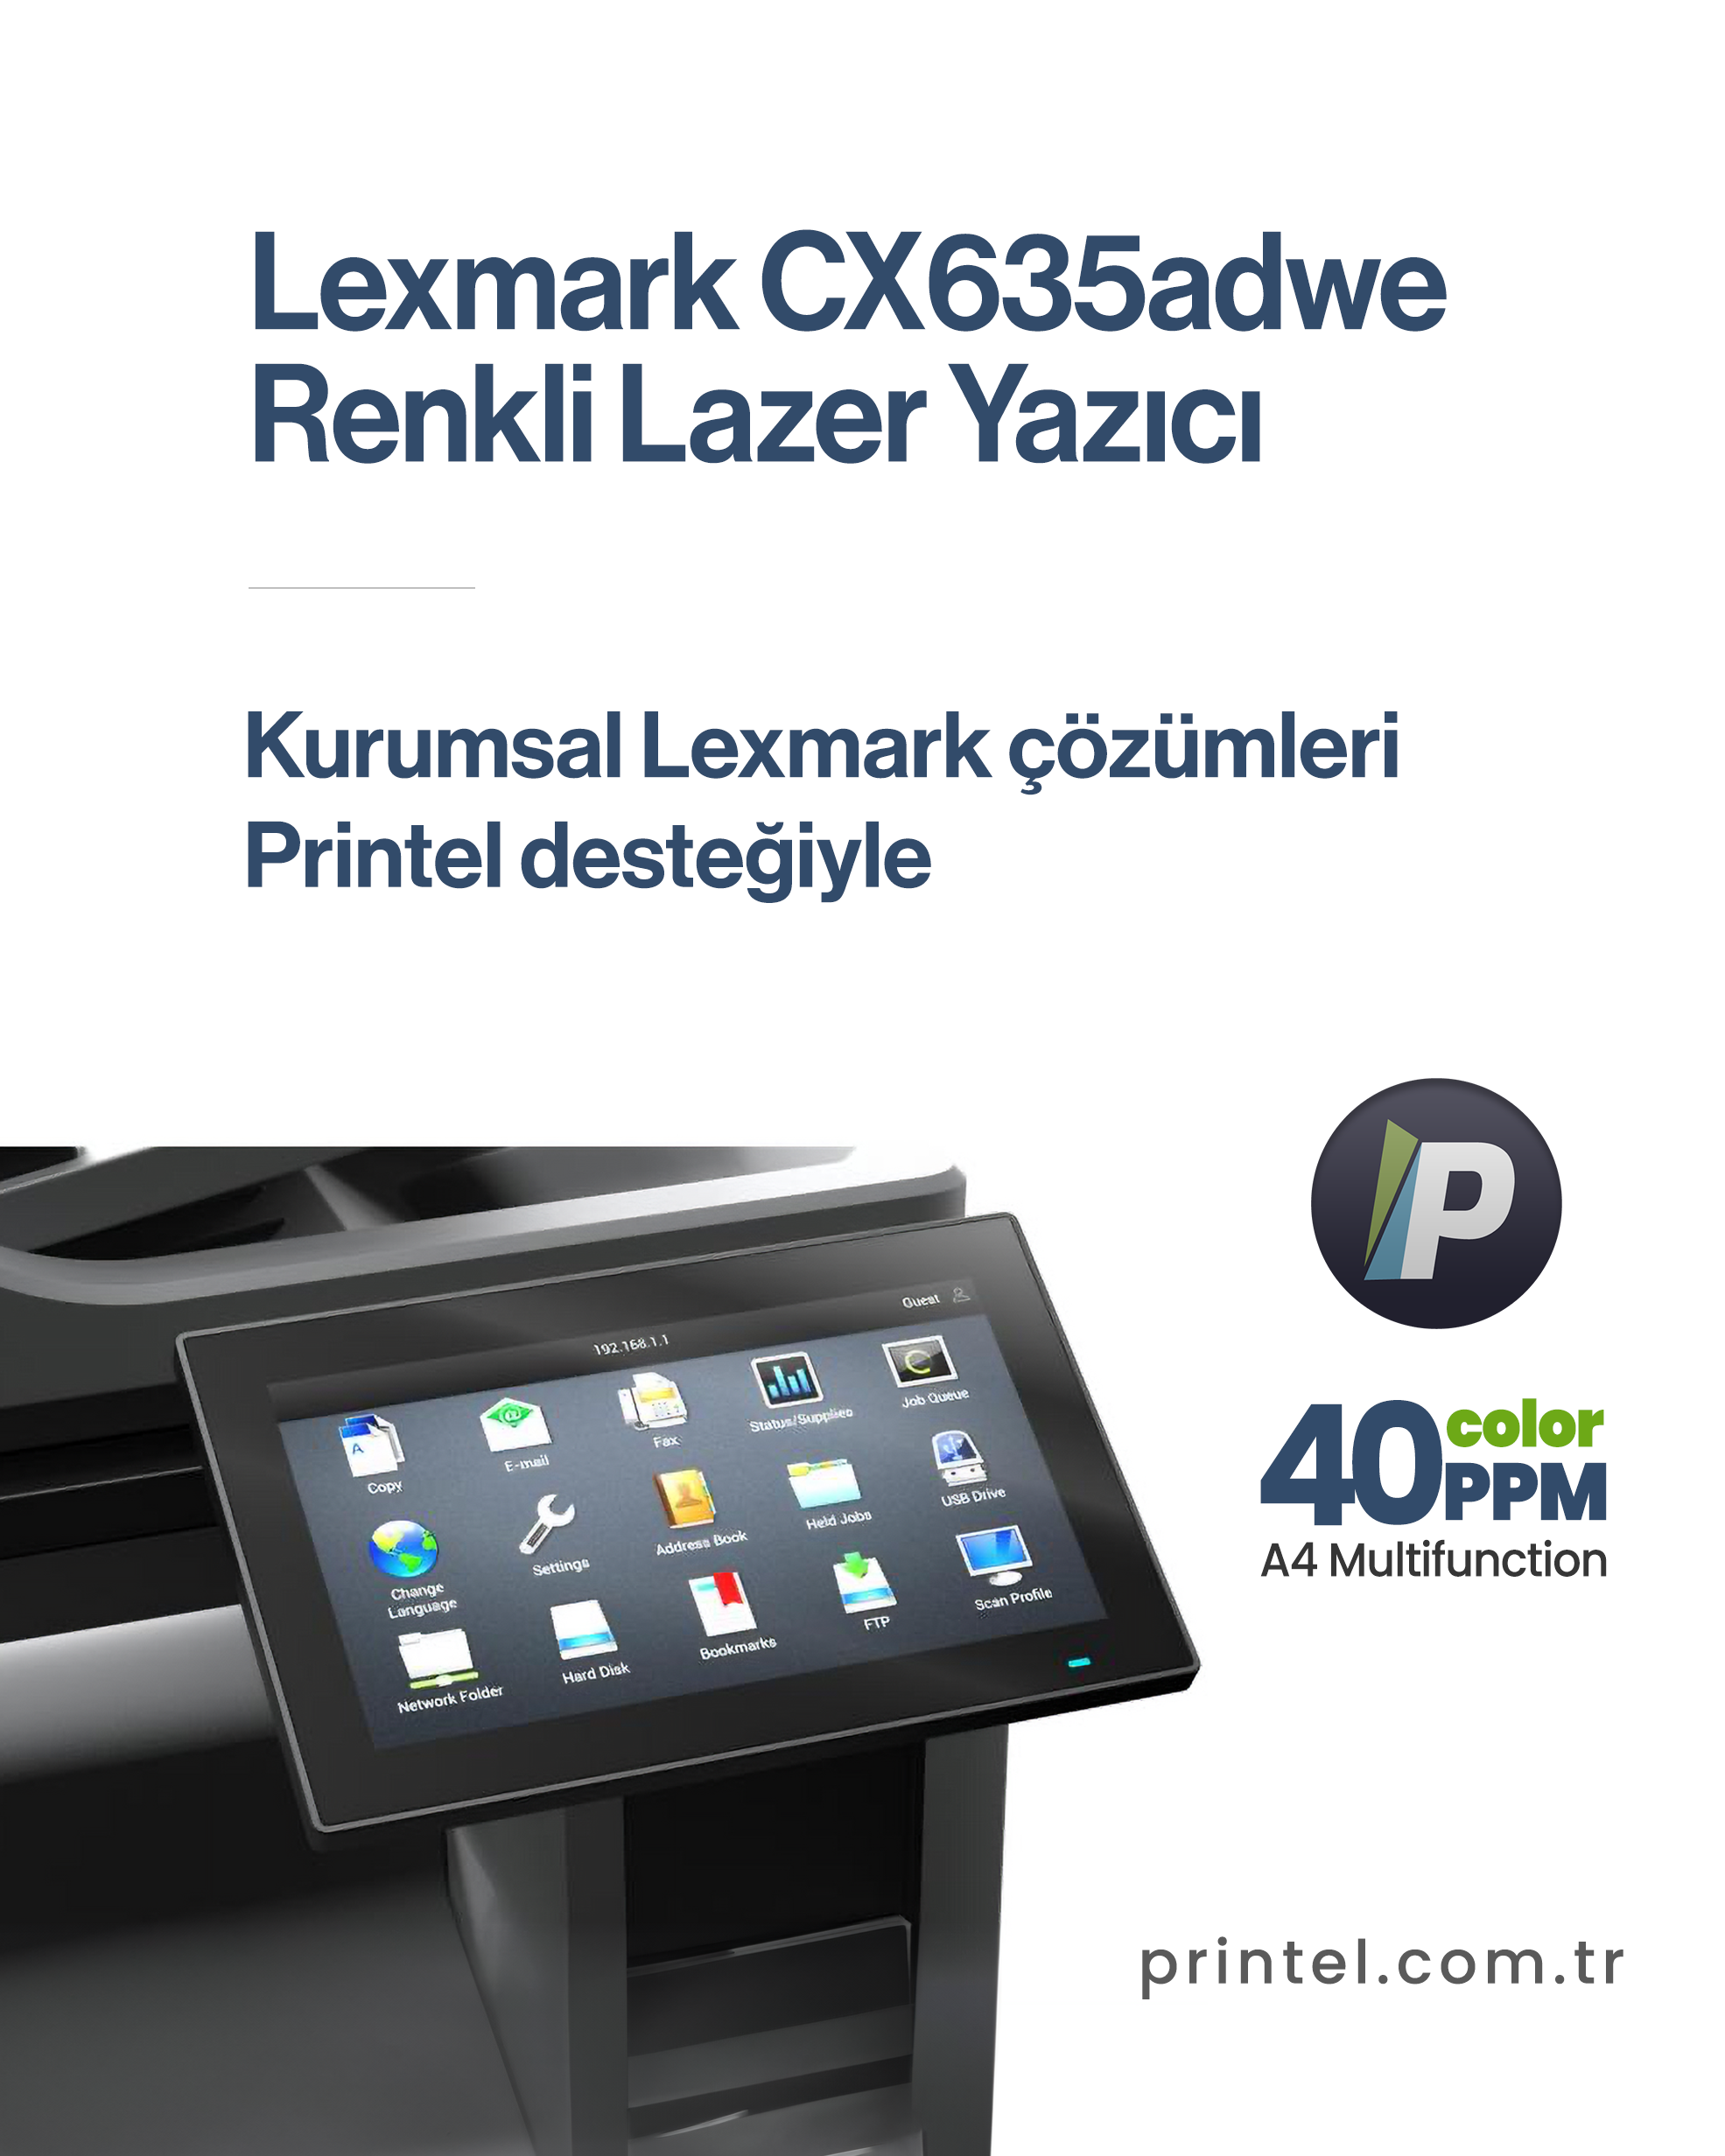 Lexmark CX635adwe Yazıcısı: Performans, Güvenlik ve Sürdürülebilirlik 2